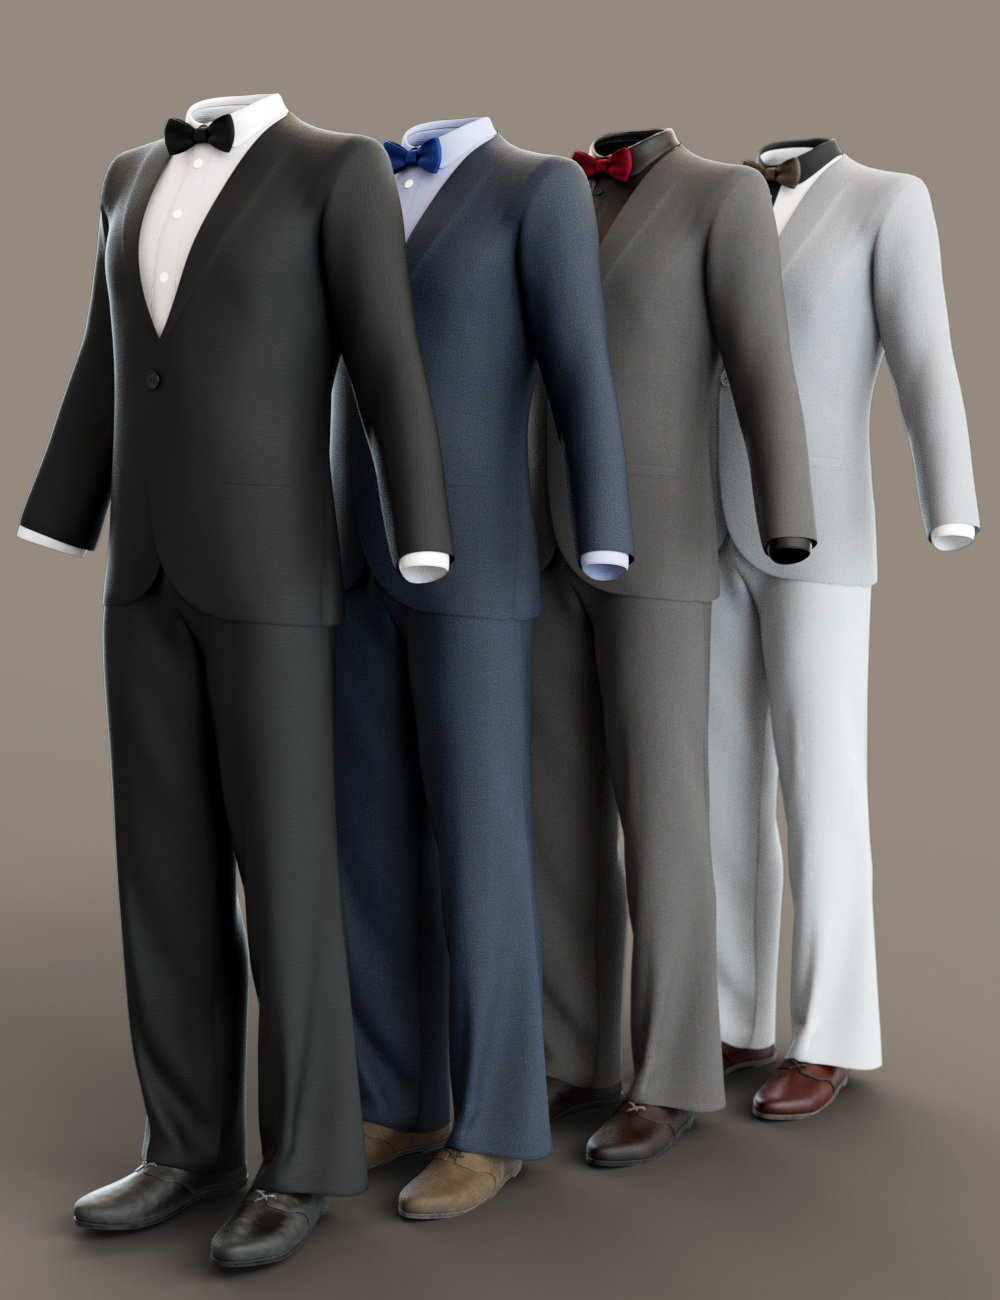 dForce Monte Carlo Suit Textures by: Moonscape GraphicsSade, 3D Models by Daz 3D